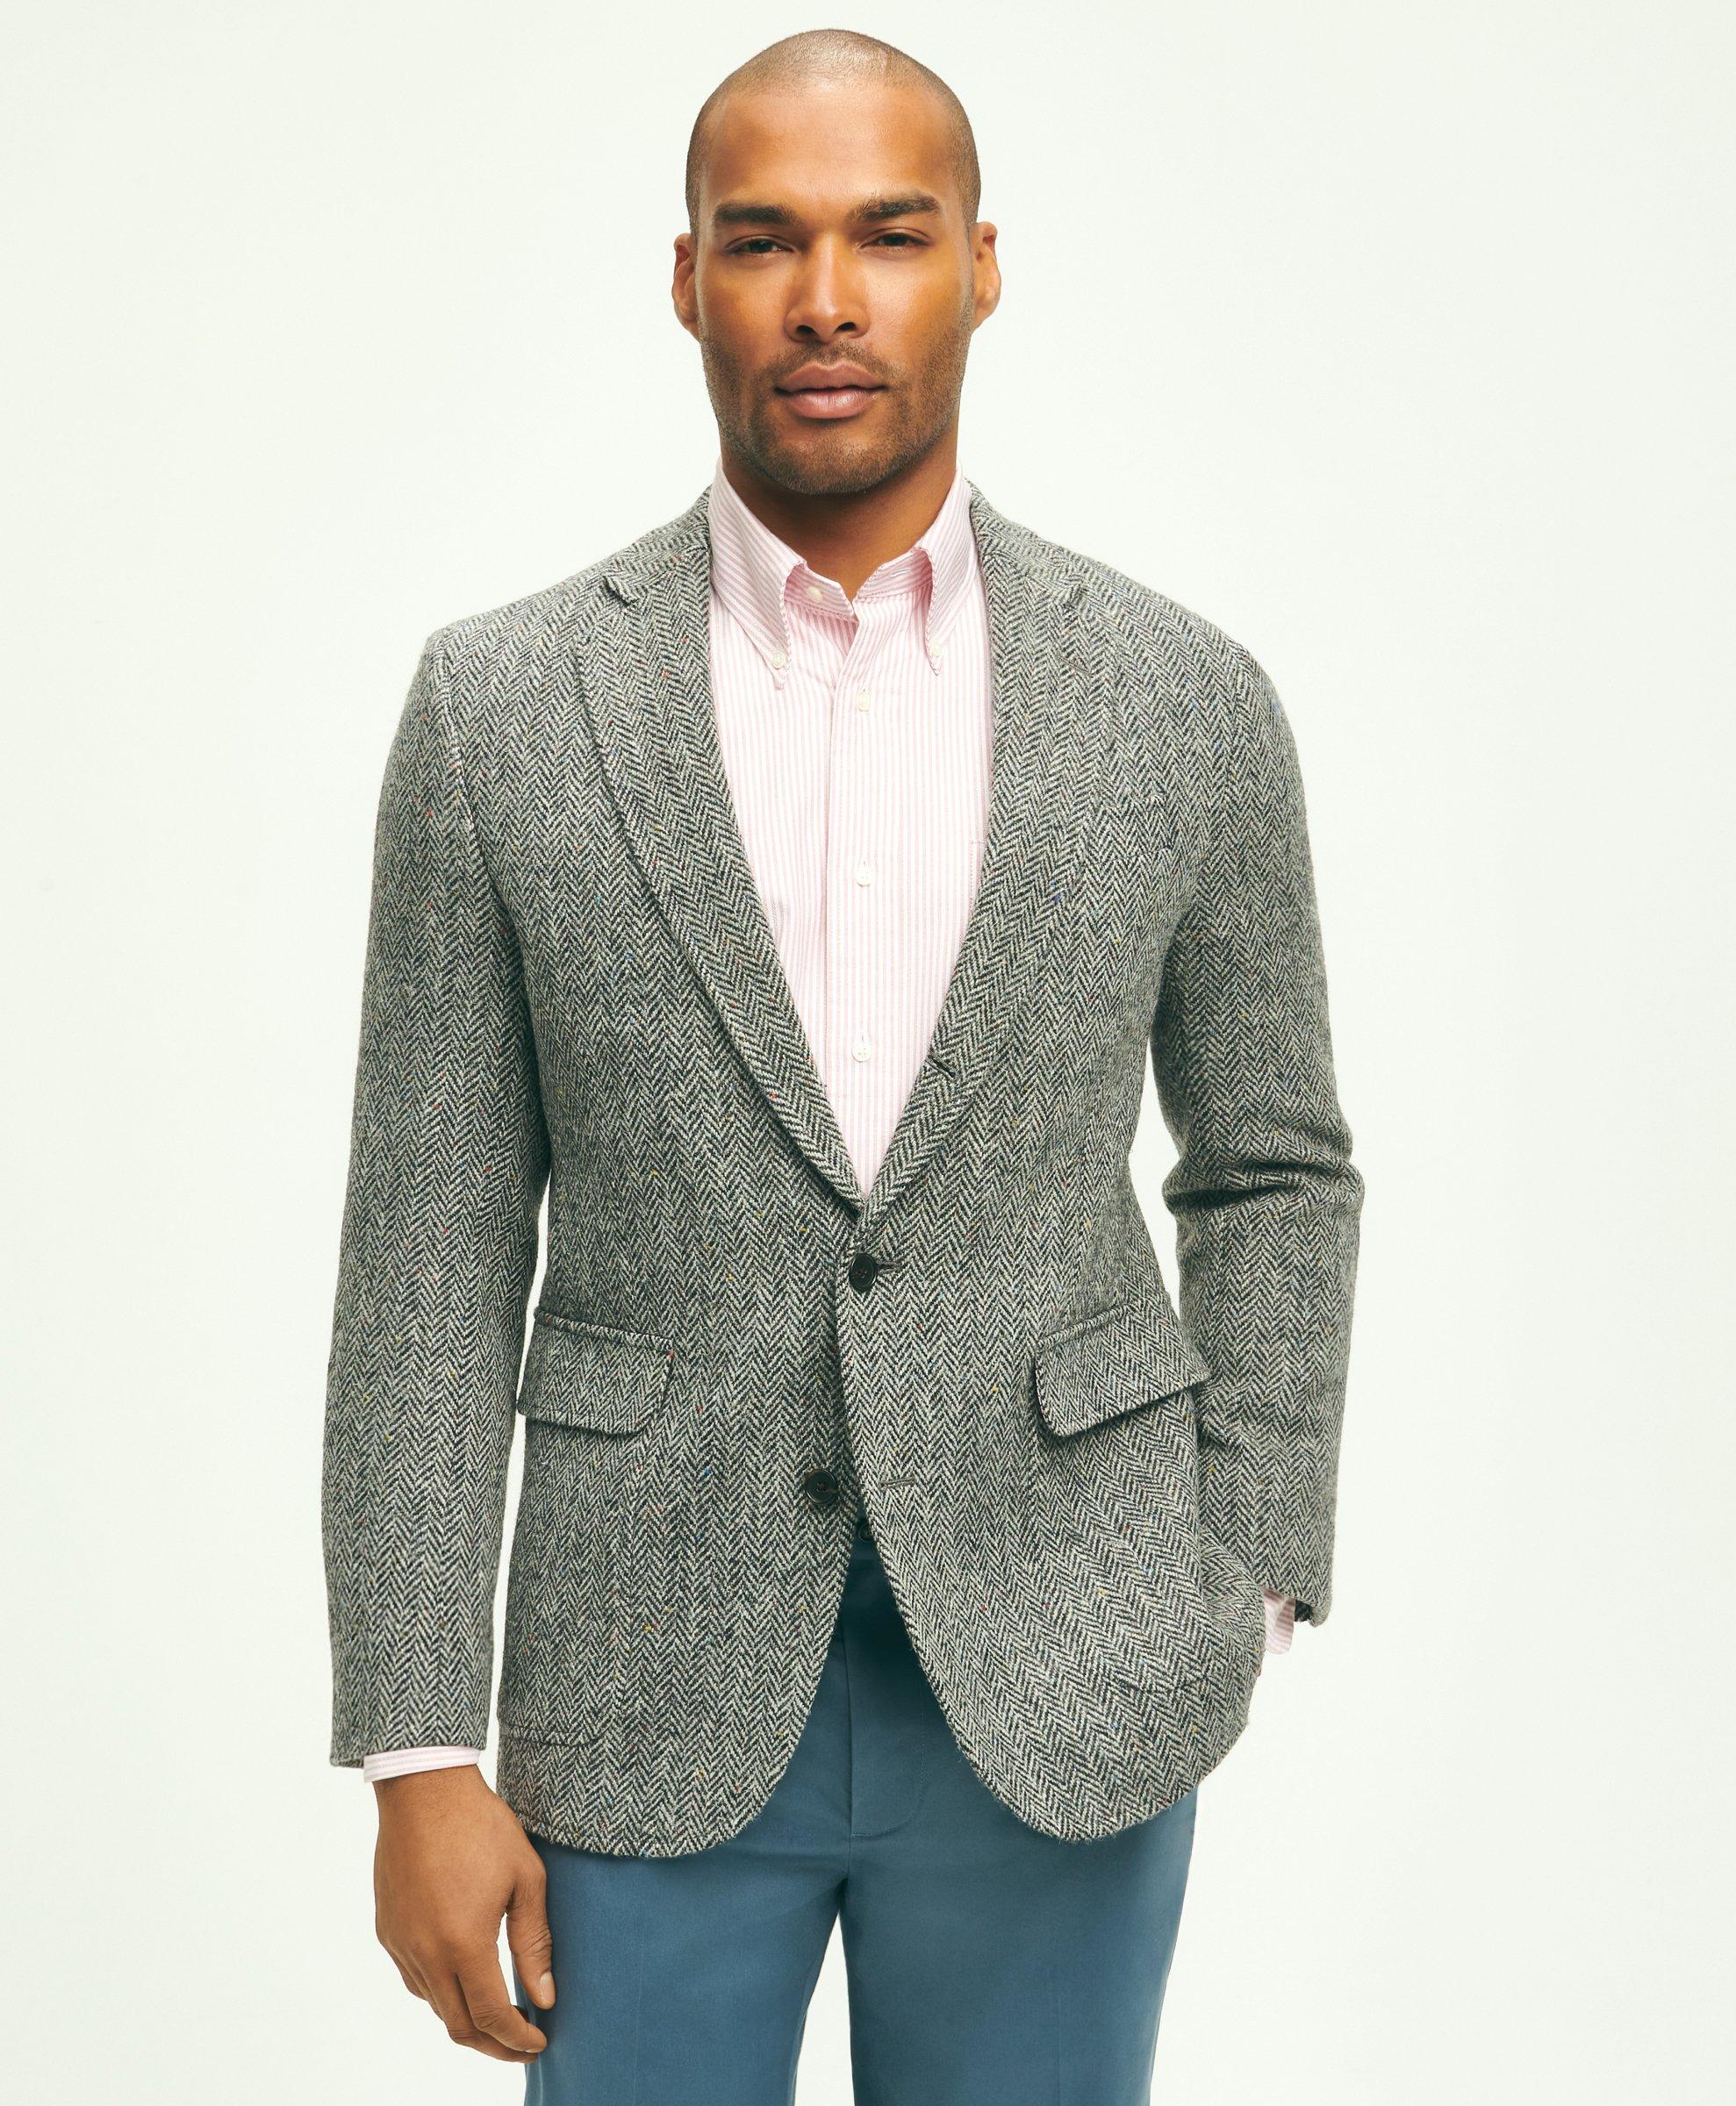 Traditional Trousers, Harris Tweed : Harris Tweed Shop, Buy